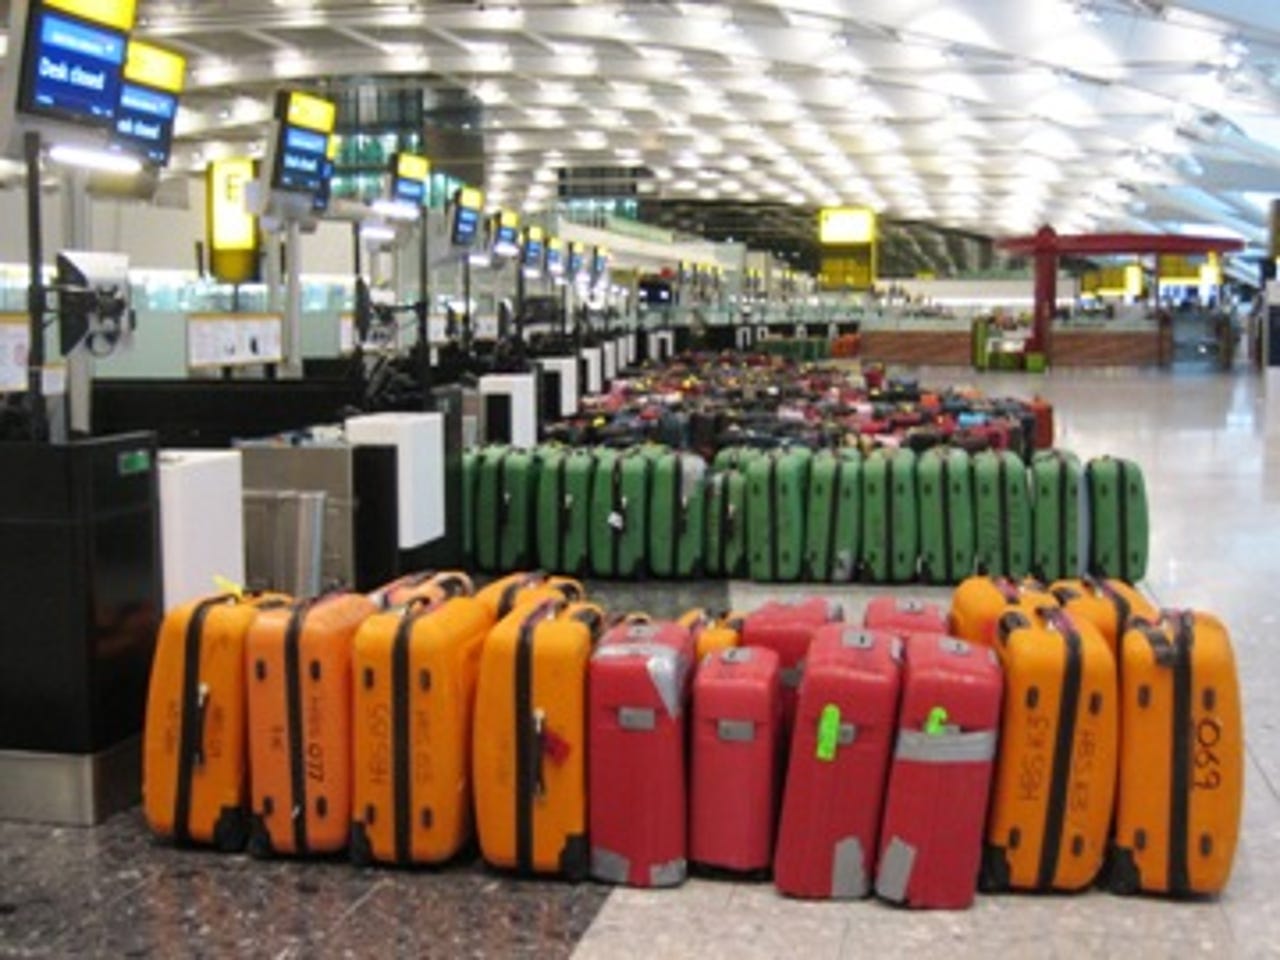 40151282-2-baggagetests.jpg